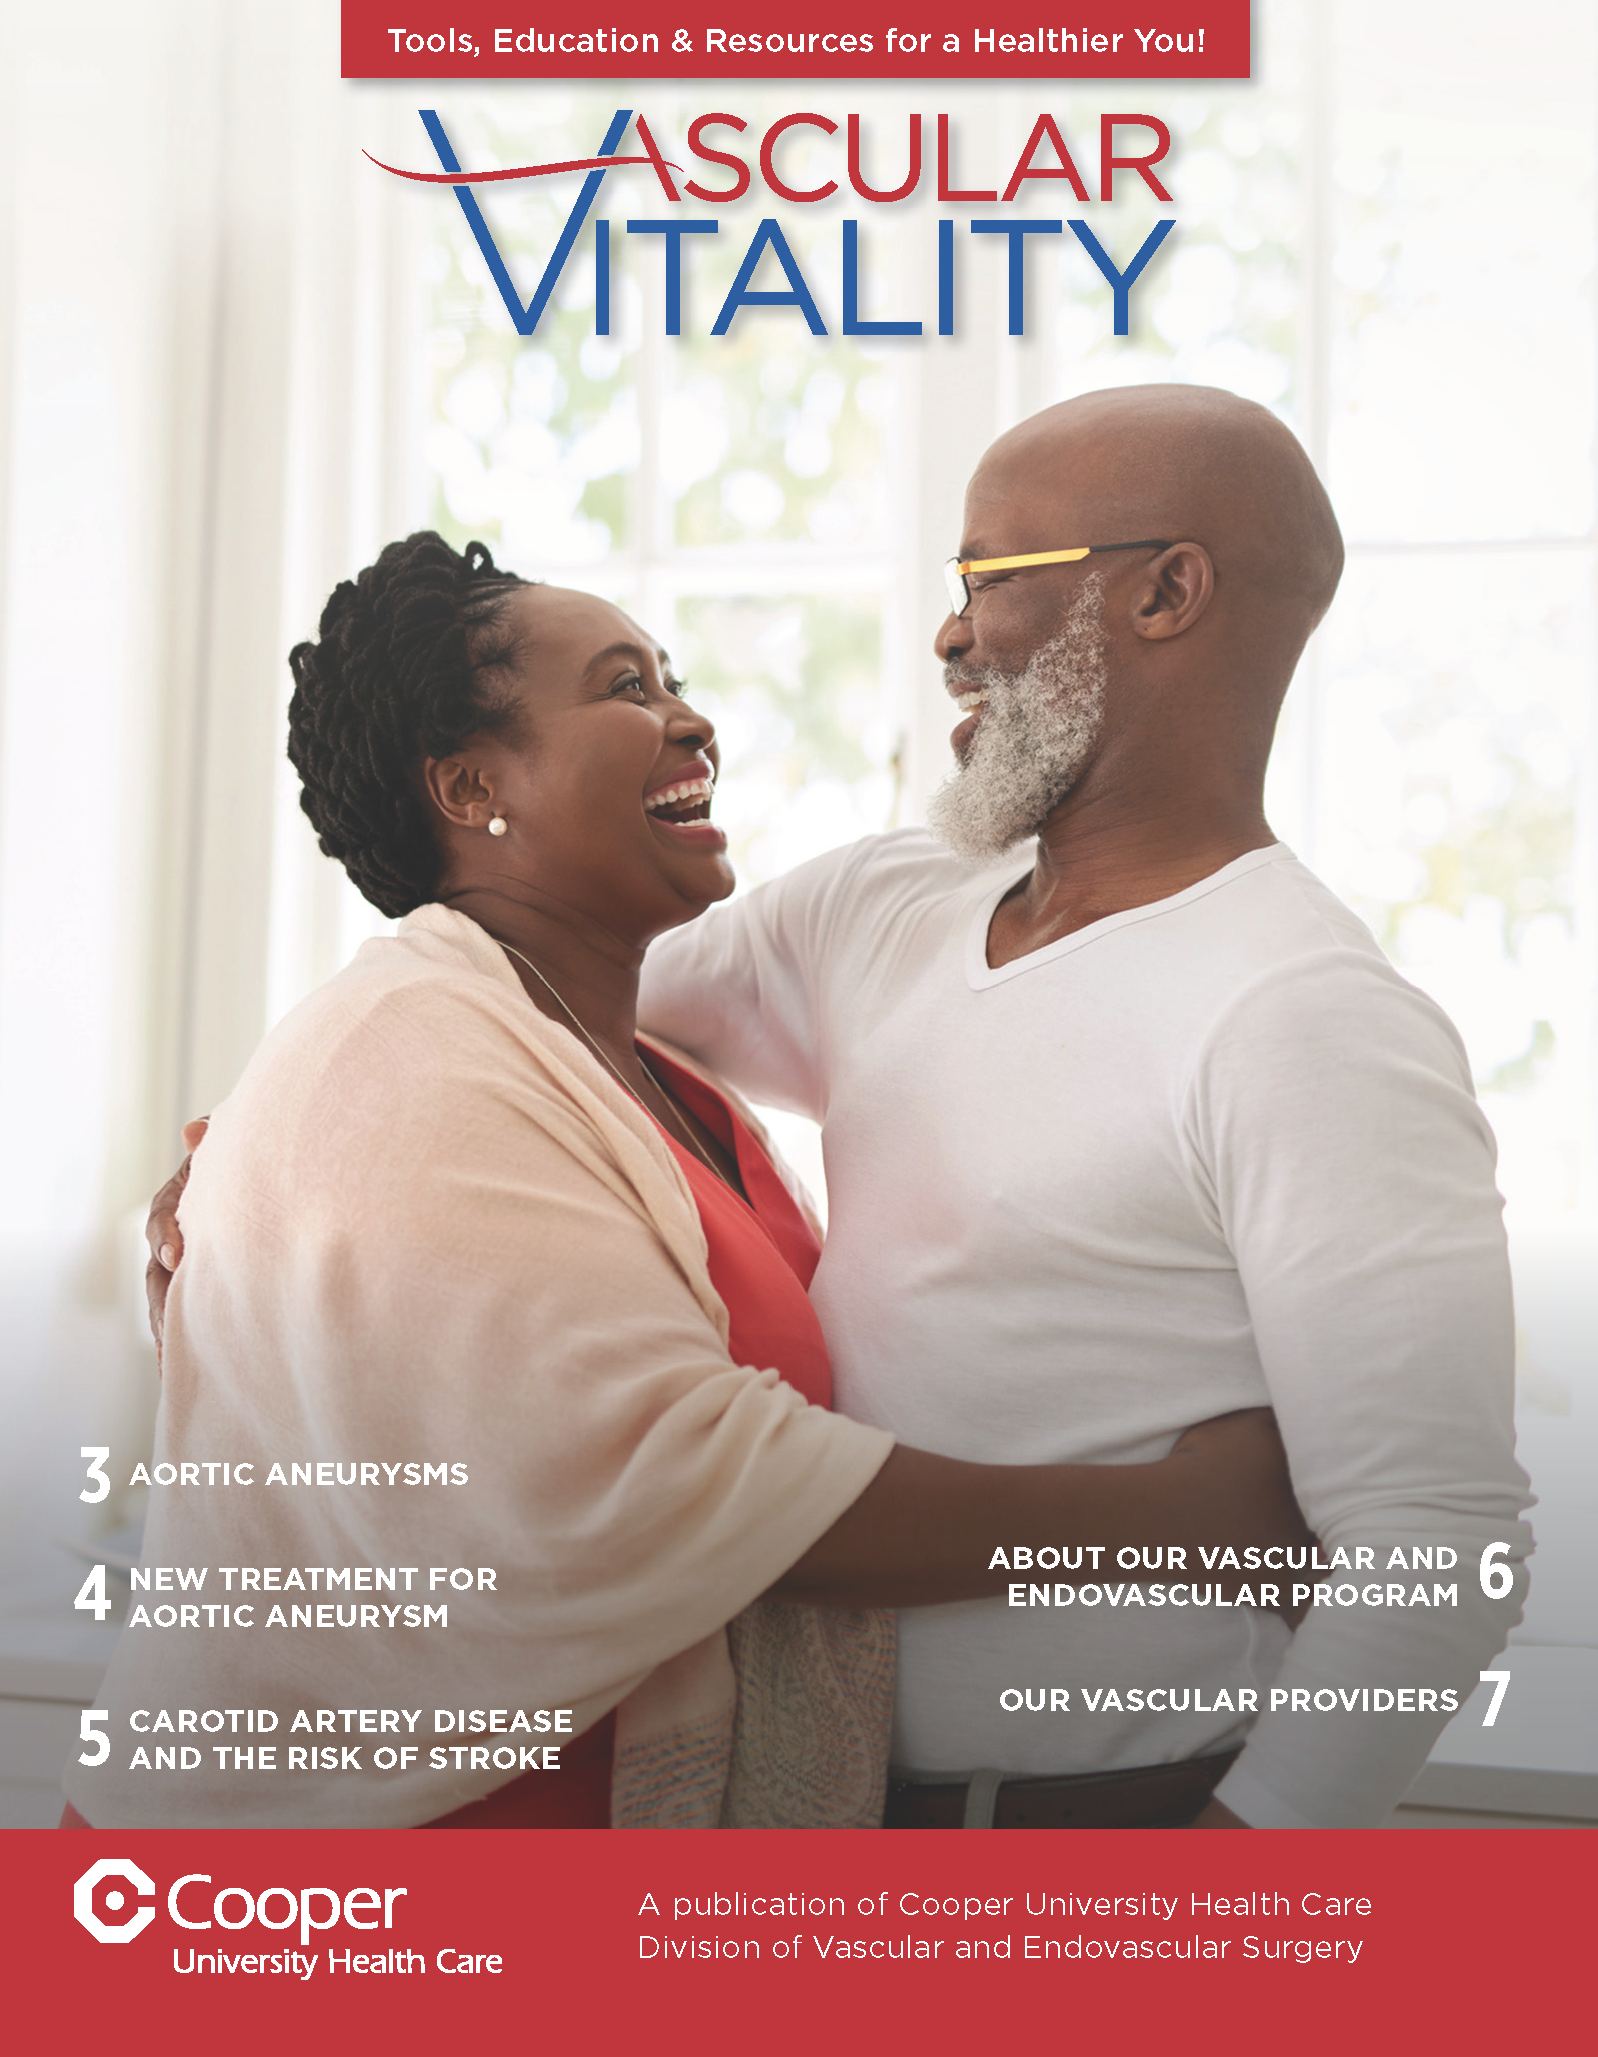 2020 Vascular Vitality Guide cover image